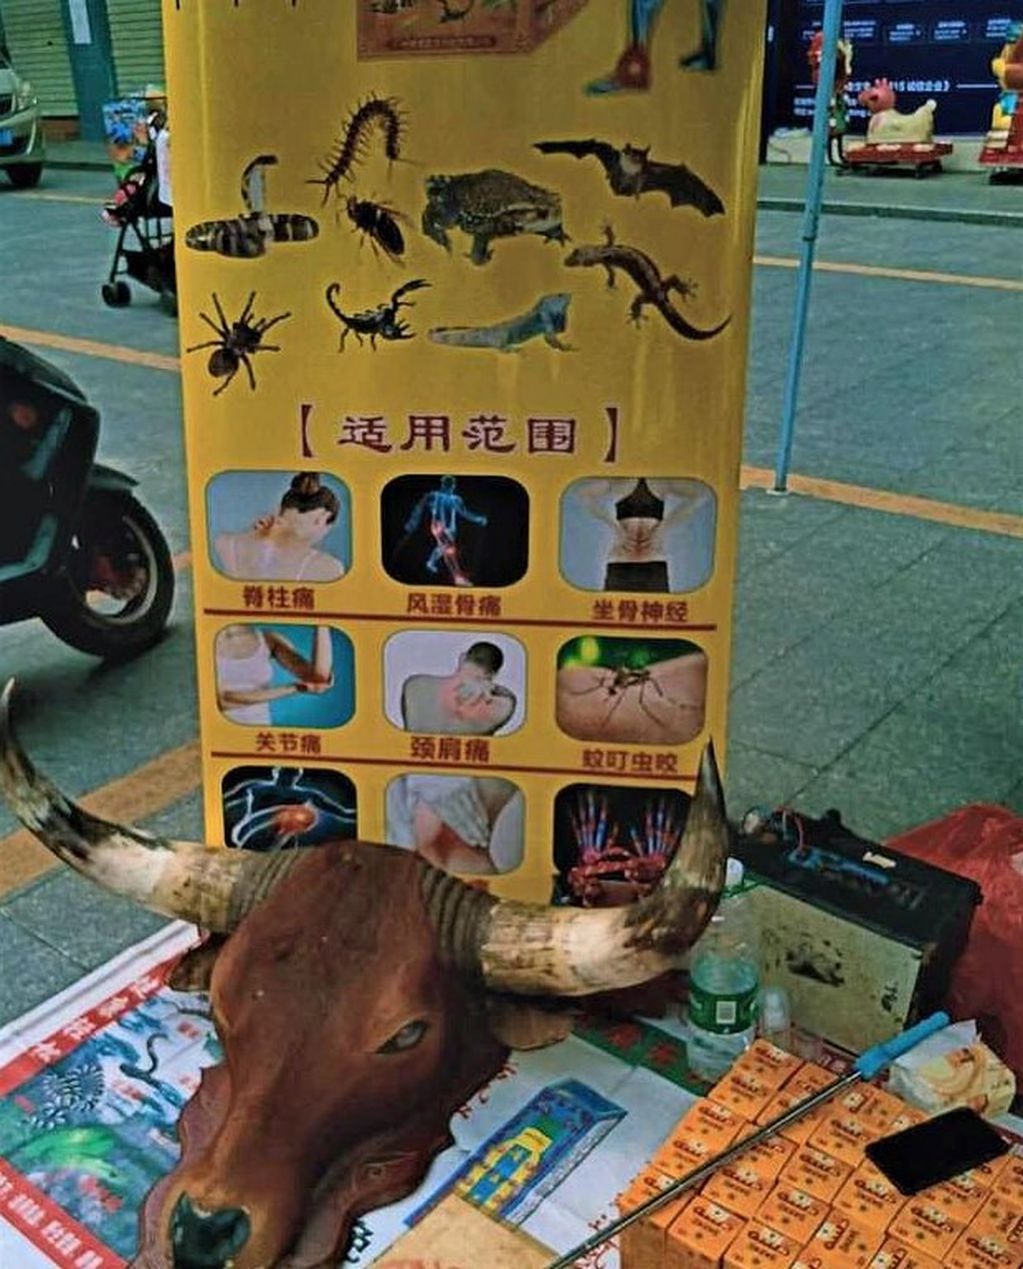 Un cartel publicita la venta de murciélagos, escorpiones y otras criaturas.